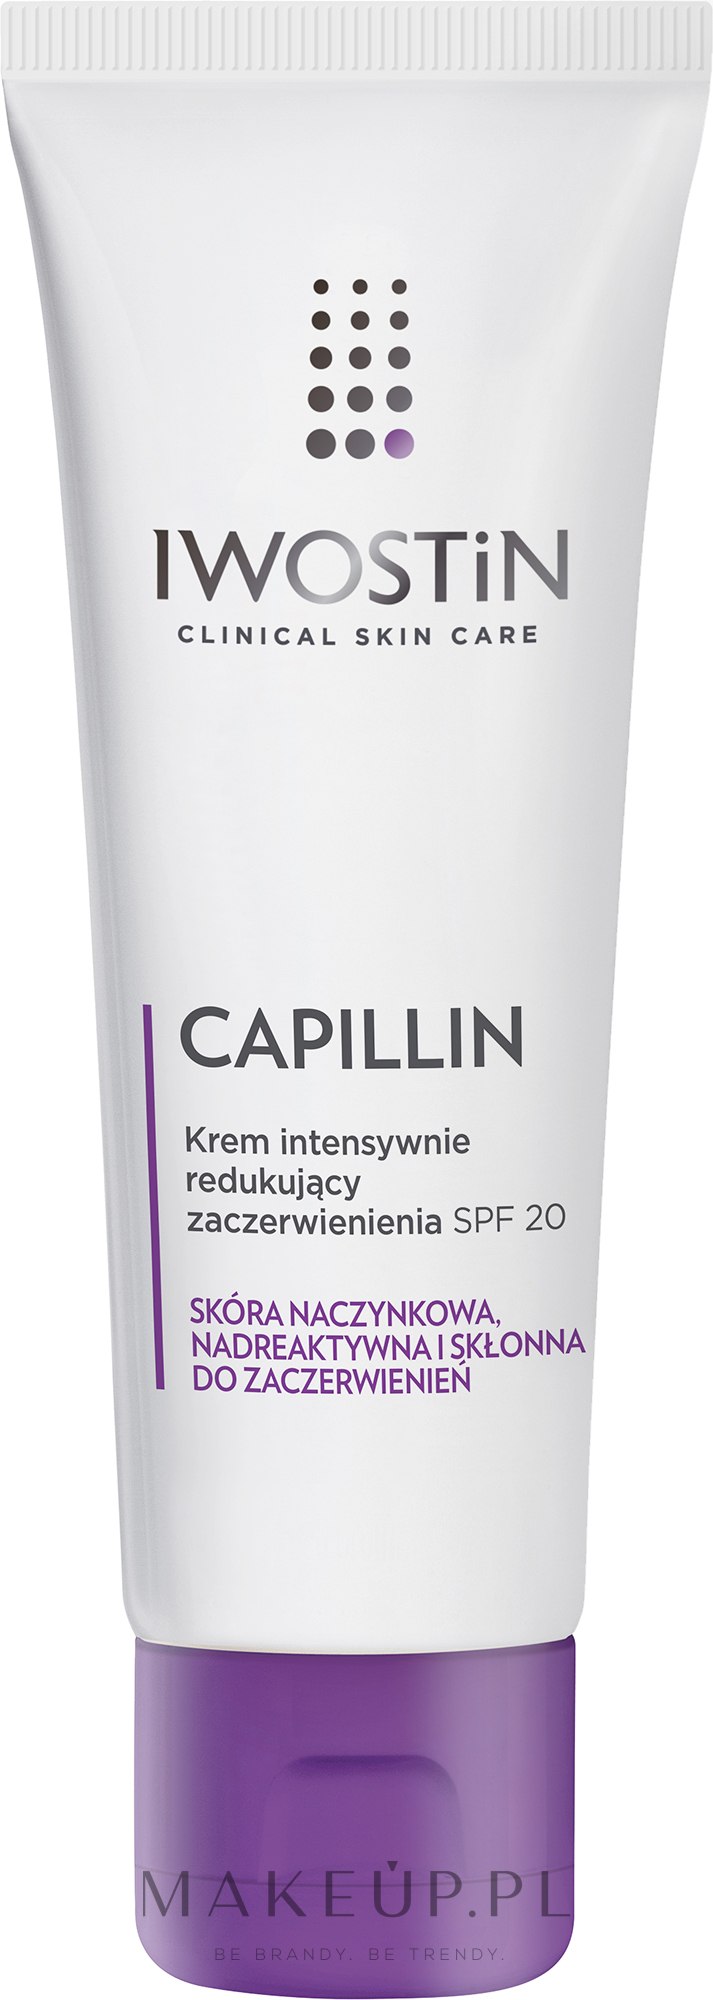 Krem intensywnie redukujący zaczerwienienia SPF 20 - Iwostin Capillin Intensive Cream SPF 20 — Zdjęcie 40 ml